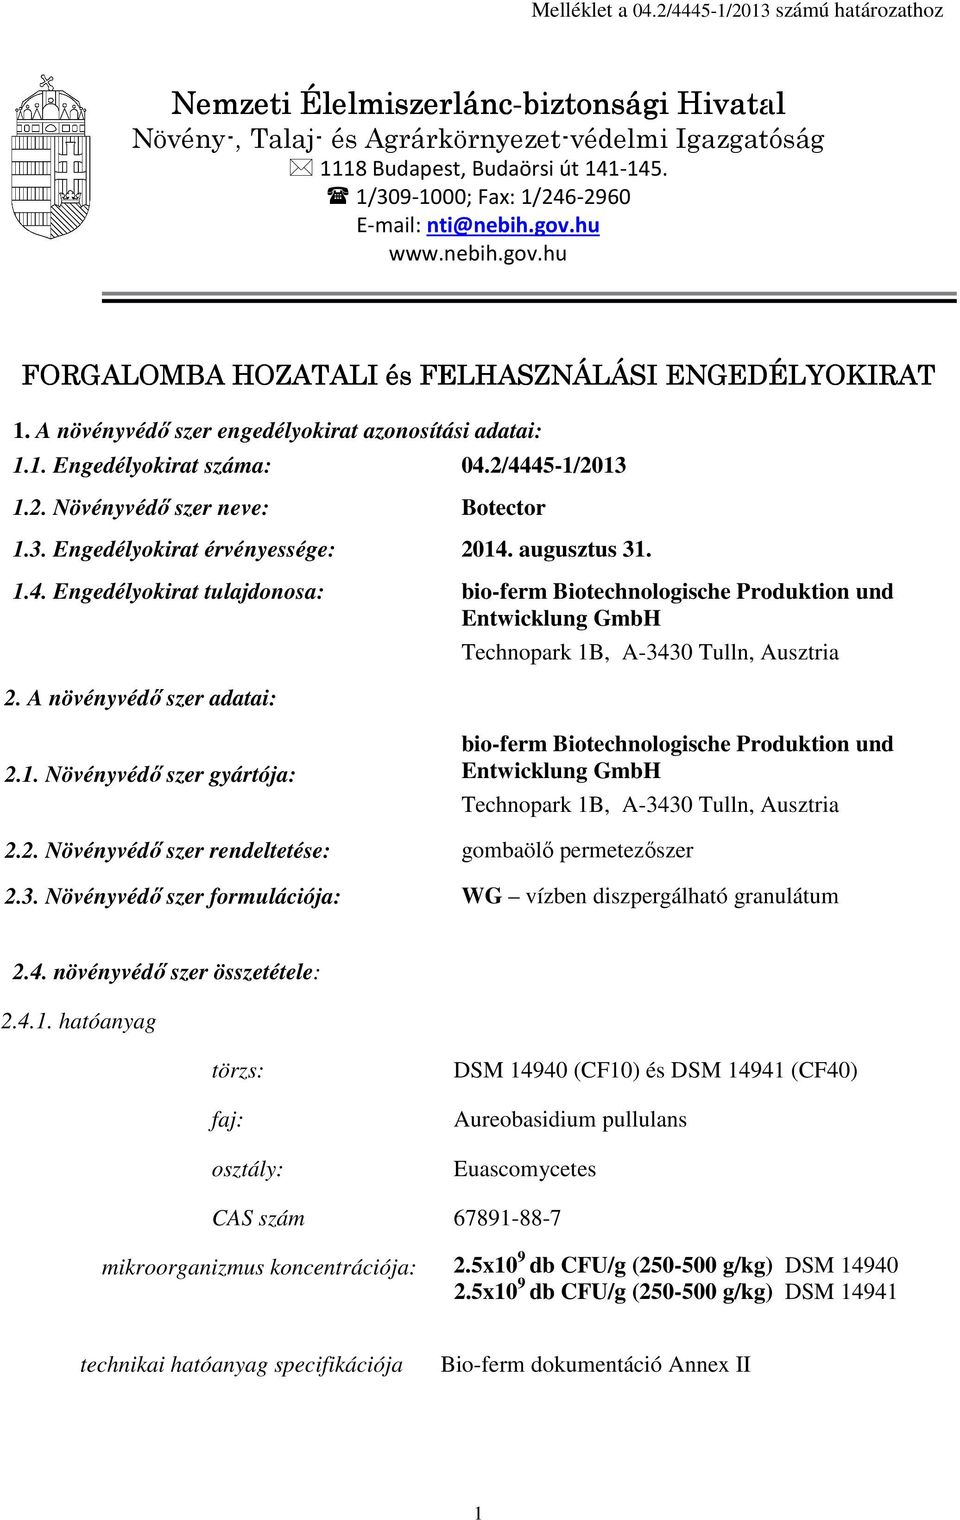 2/4445-1/2013 1.2. Növényvédő szer neve: Botector 1.3. Engedélyokirat érvényessége: 2014. augusztus 31. 1.4. Engedélyokirat tulajdonosa: bio-ferm Biotechnologische Produktion und Entwicklung GmbH 2.